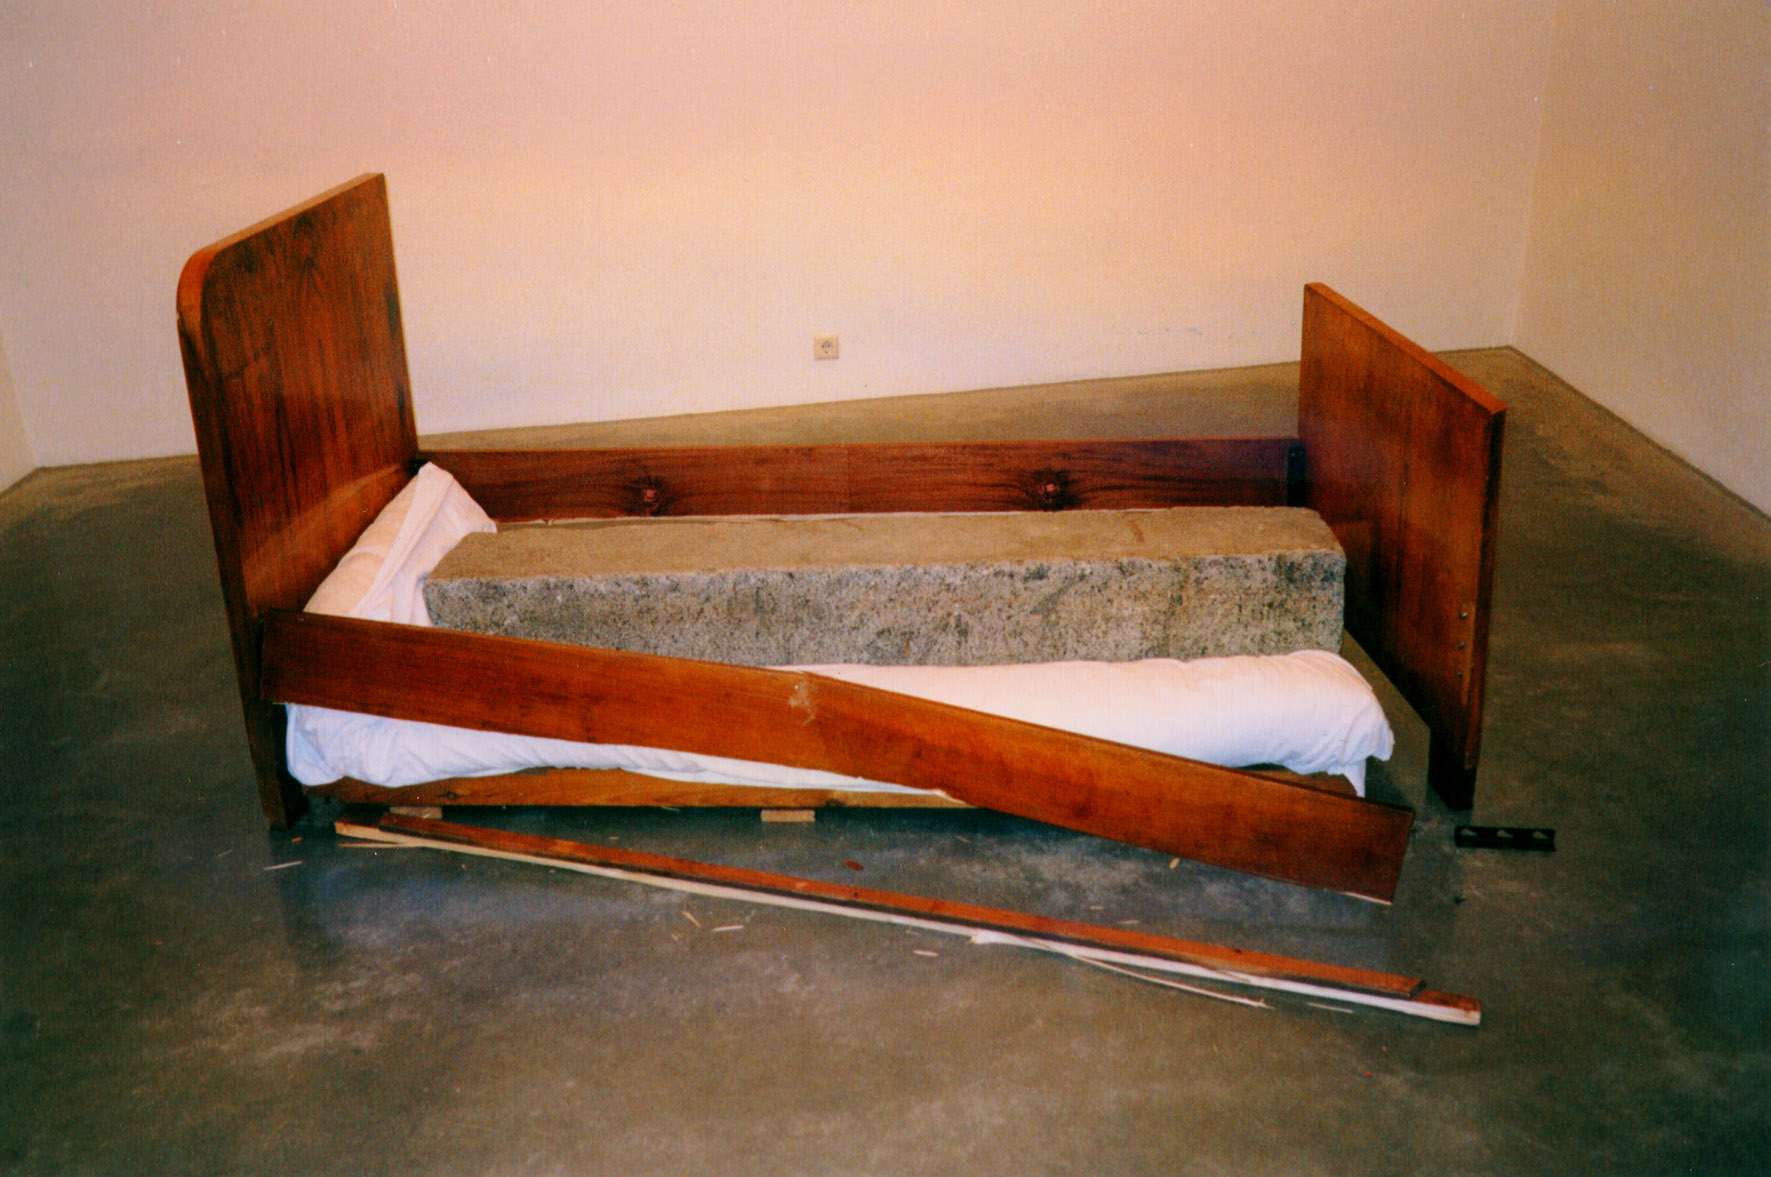 Порно онлайн - брюнетка испробовала сексом старую кровать на прочность